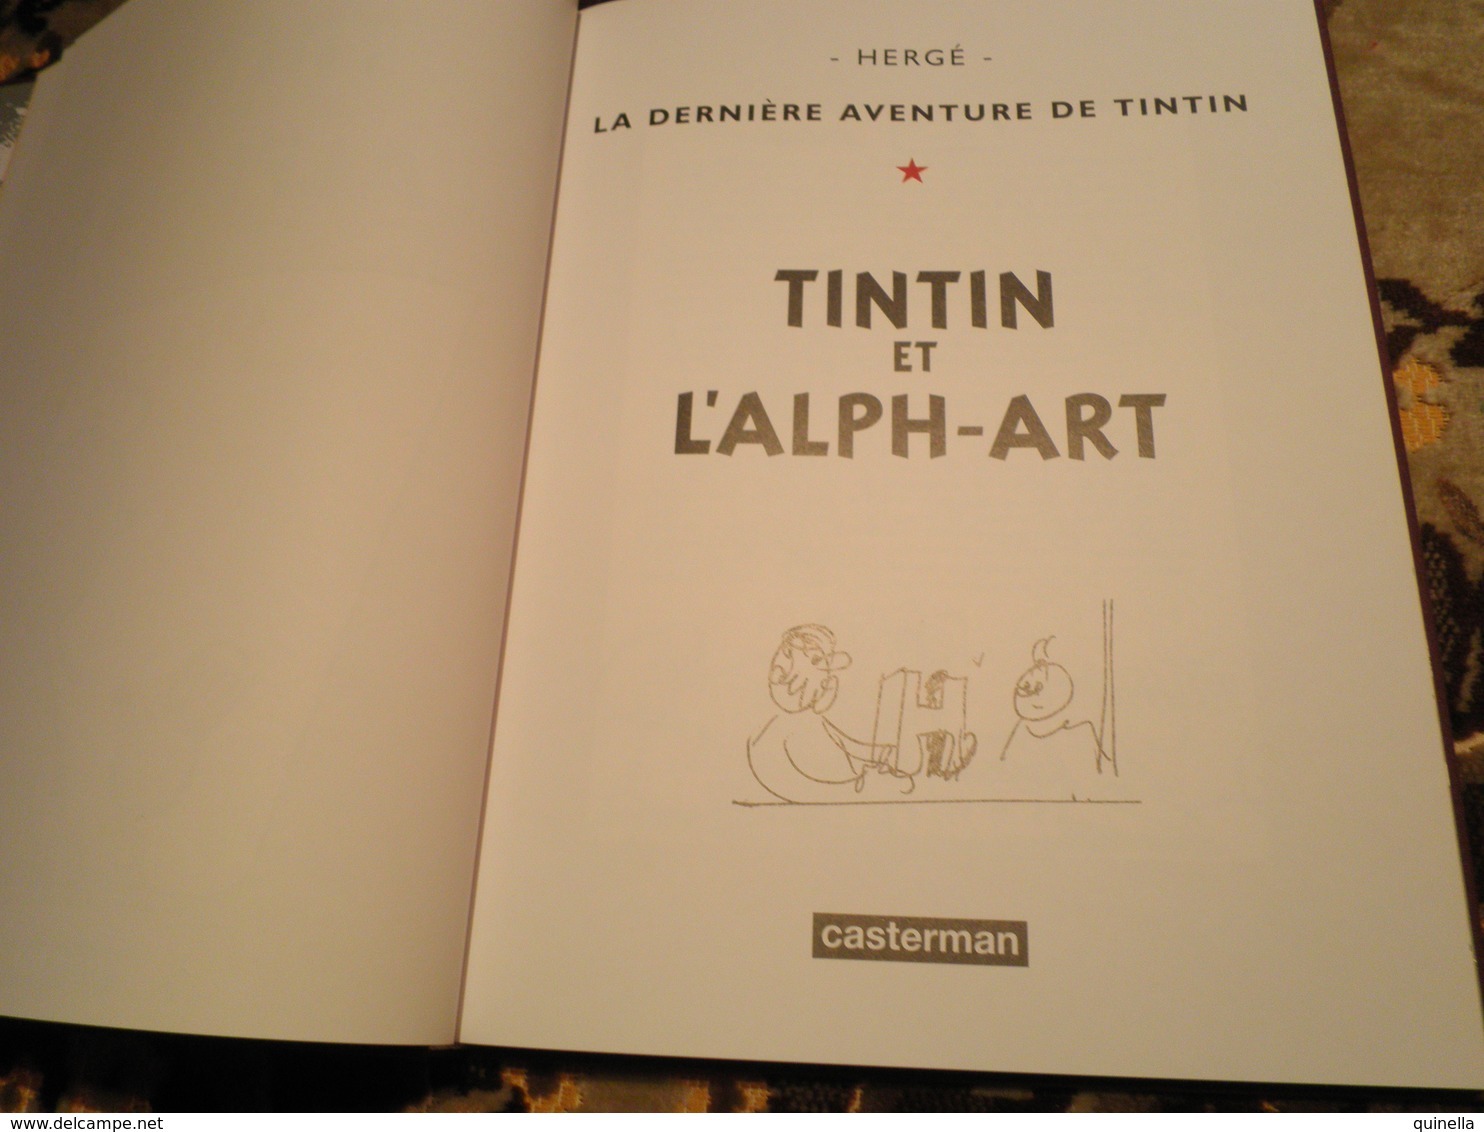 Tintin    Livre Avec ,  Les Archives Tintin Avec " L'Alpha - Art " 120 Pages  ( Voir Scan Pour Détailles ) - Tintin